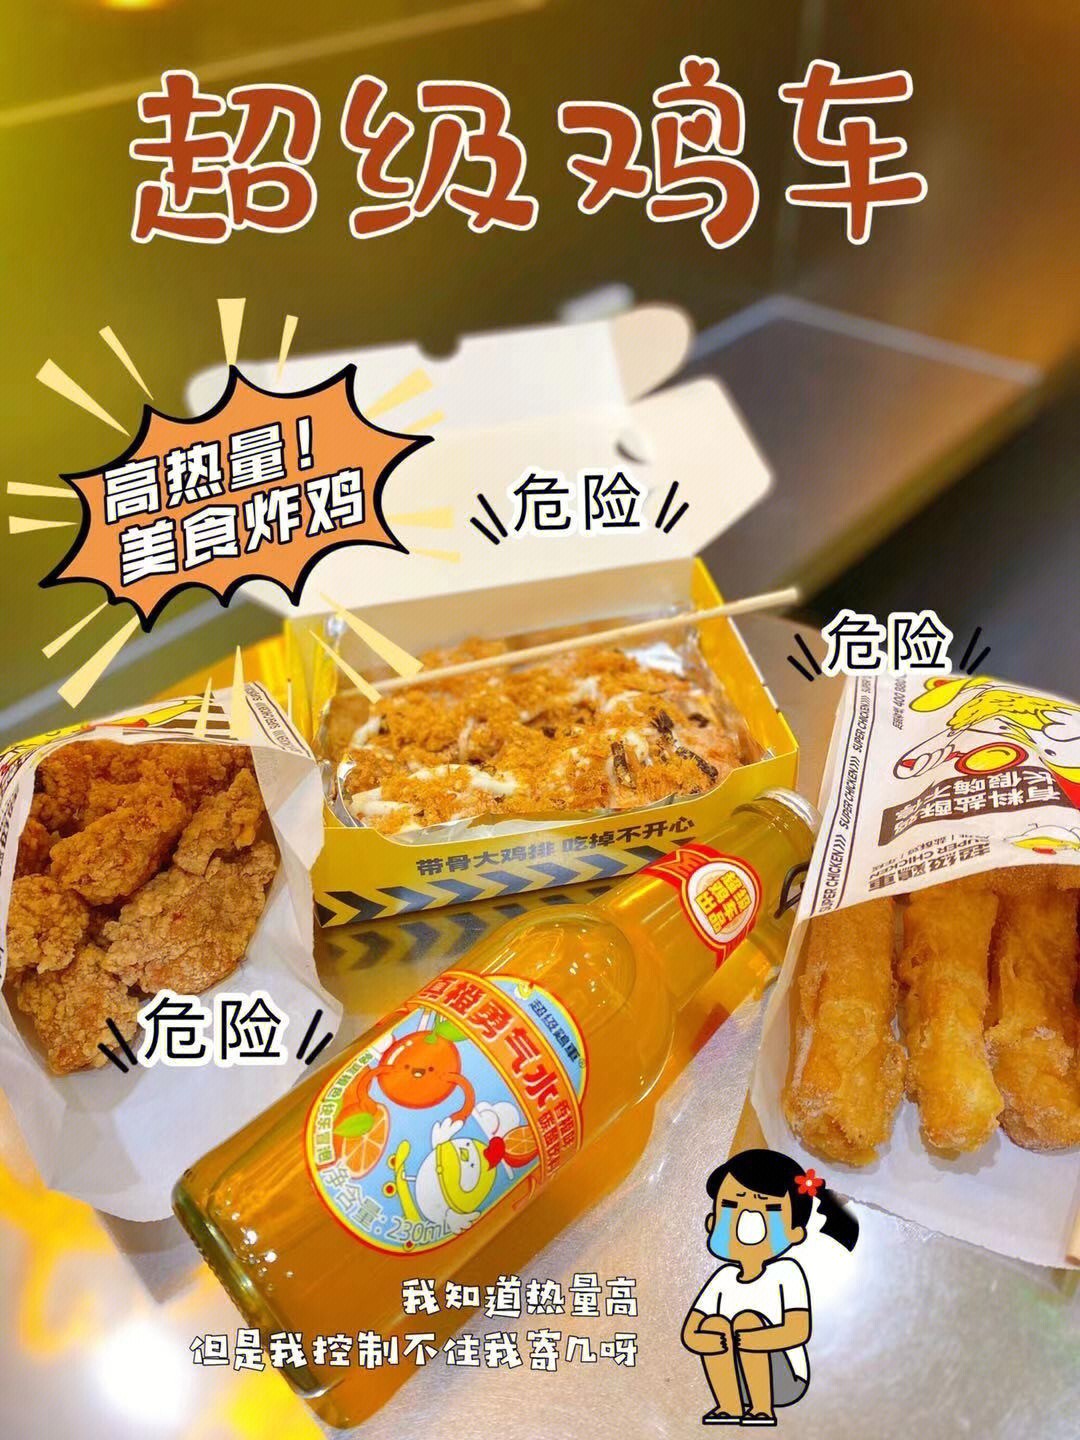 上海巧尔炸鸡总部图片